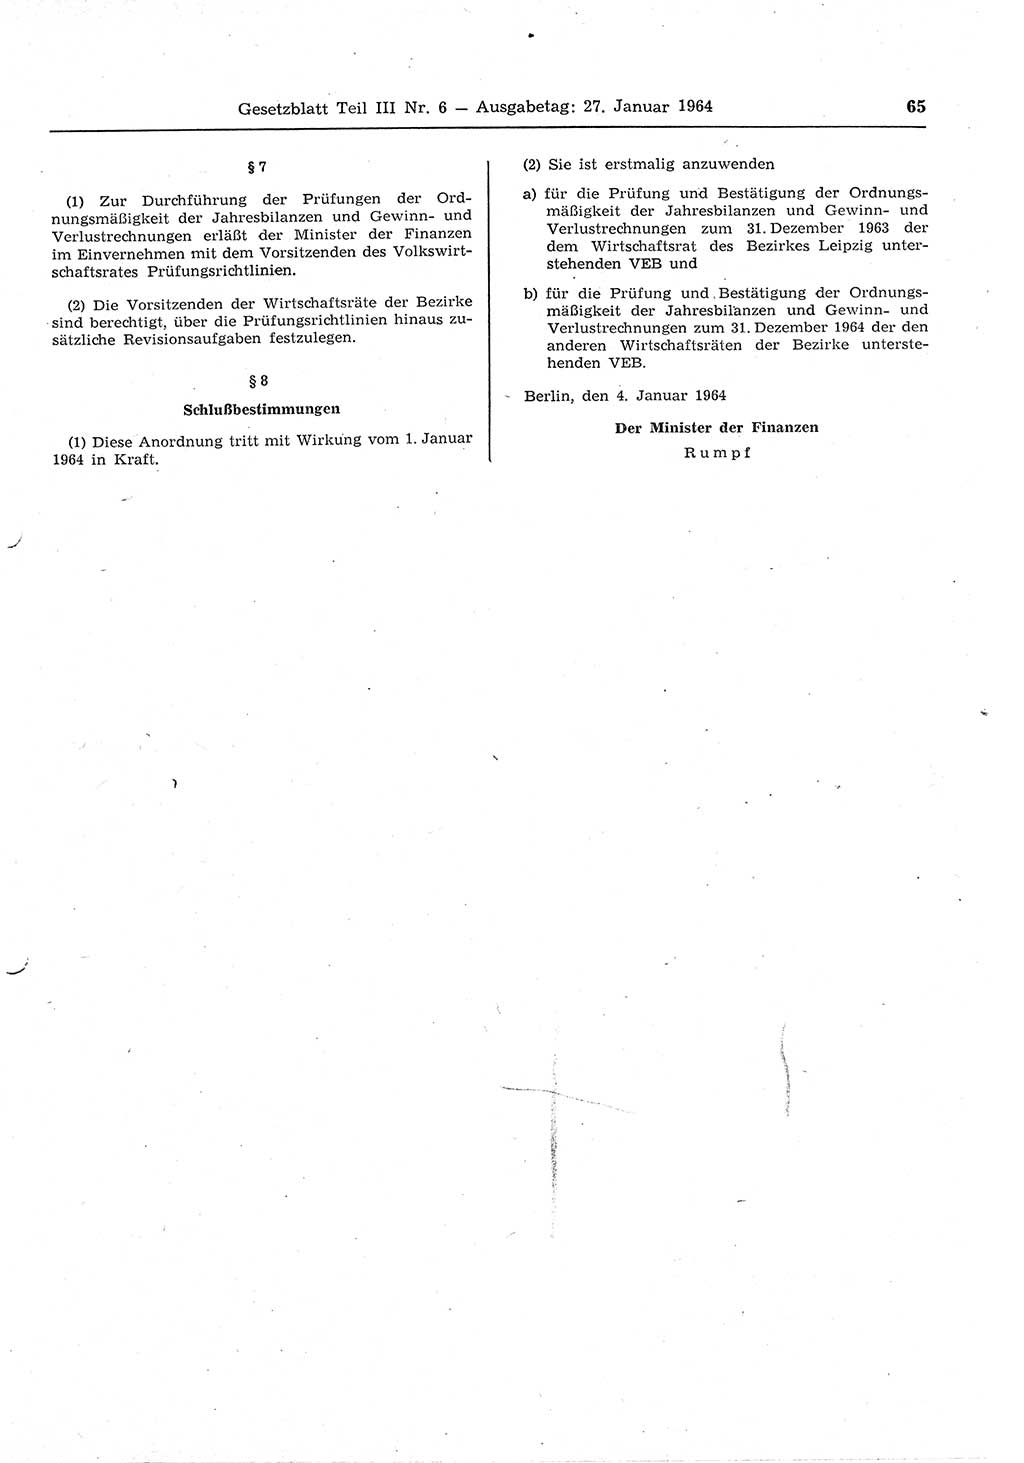 Gesetzblatt (GBl.) der Deutschen Demokratischen Republik (DDR) Teil ⅠⅠⅠ 1964, Seite 65 (GBl. DDR ⅠⅠⅠ 1964, S. 65)